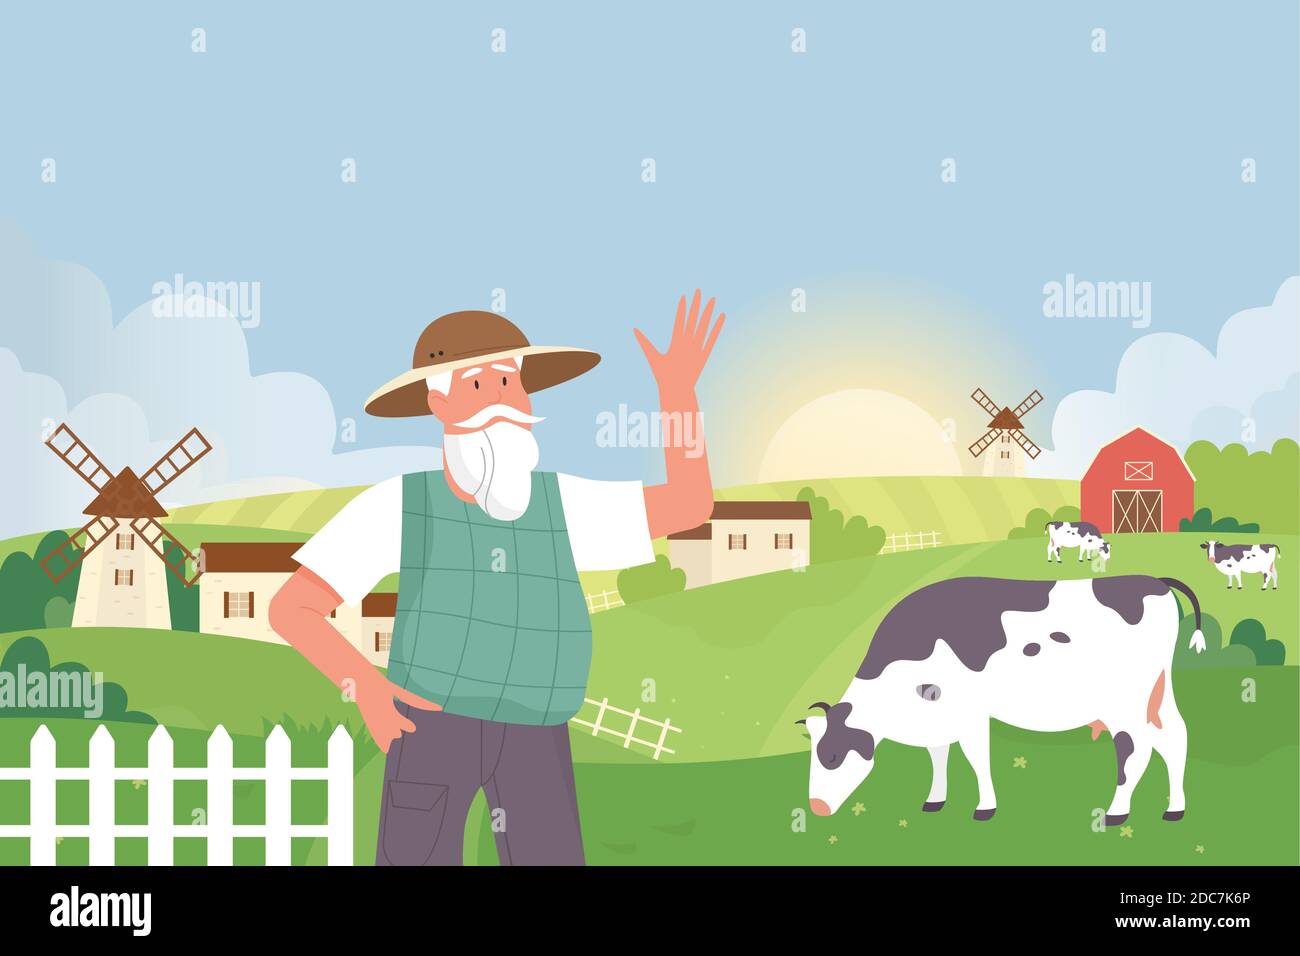 Landwirt in Ackerland Dorf Landschaft Vektor-Illustration. Cartoon ältere Dorfbewohner Mann Figur neben Windmühle, Haus oder Scheune und Land Landwirtschaft grünes Feld mit Kühen Hintergrund stehen Stock Vektor